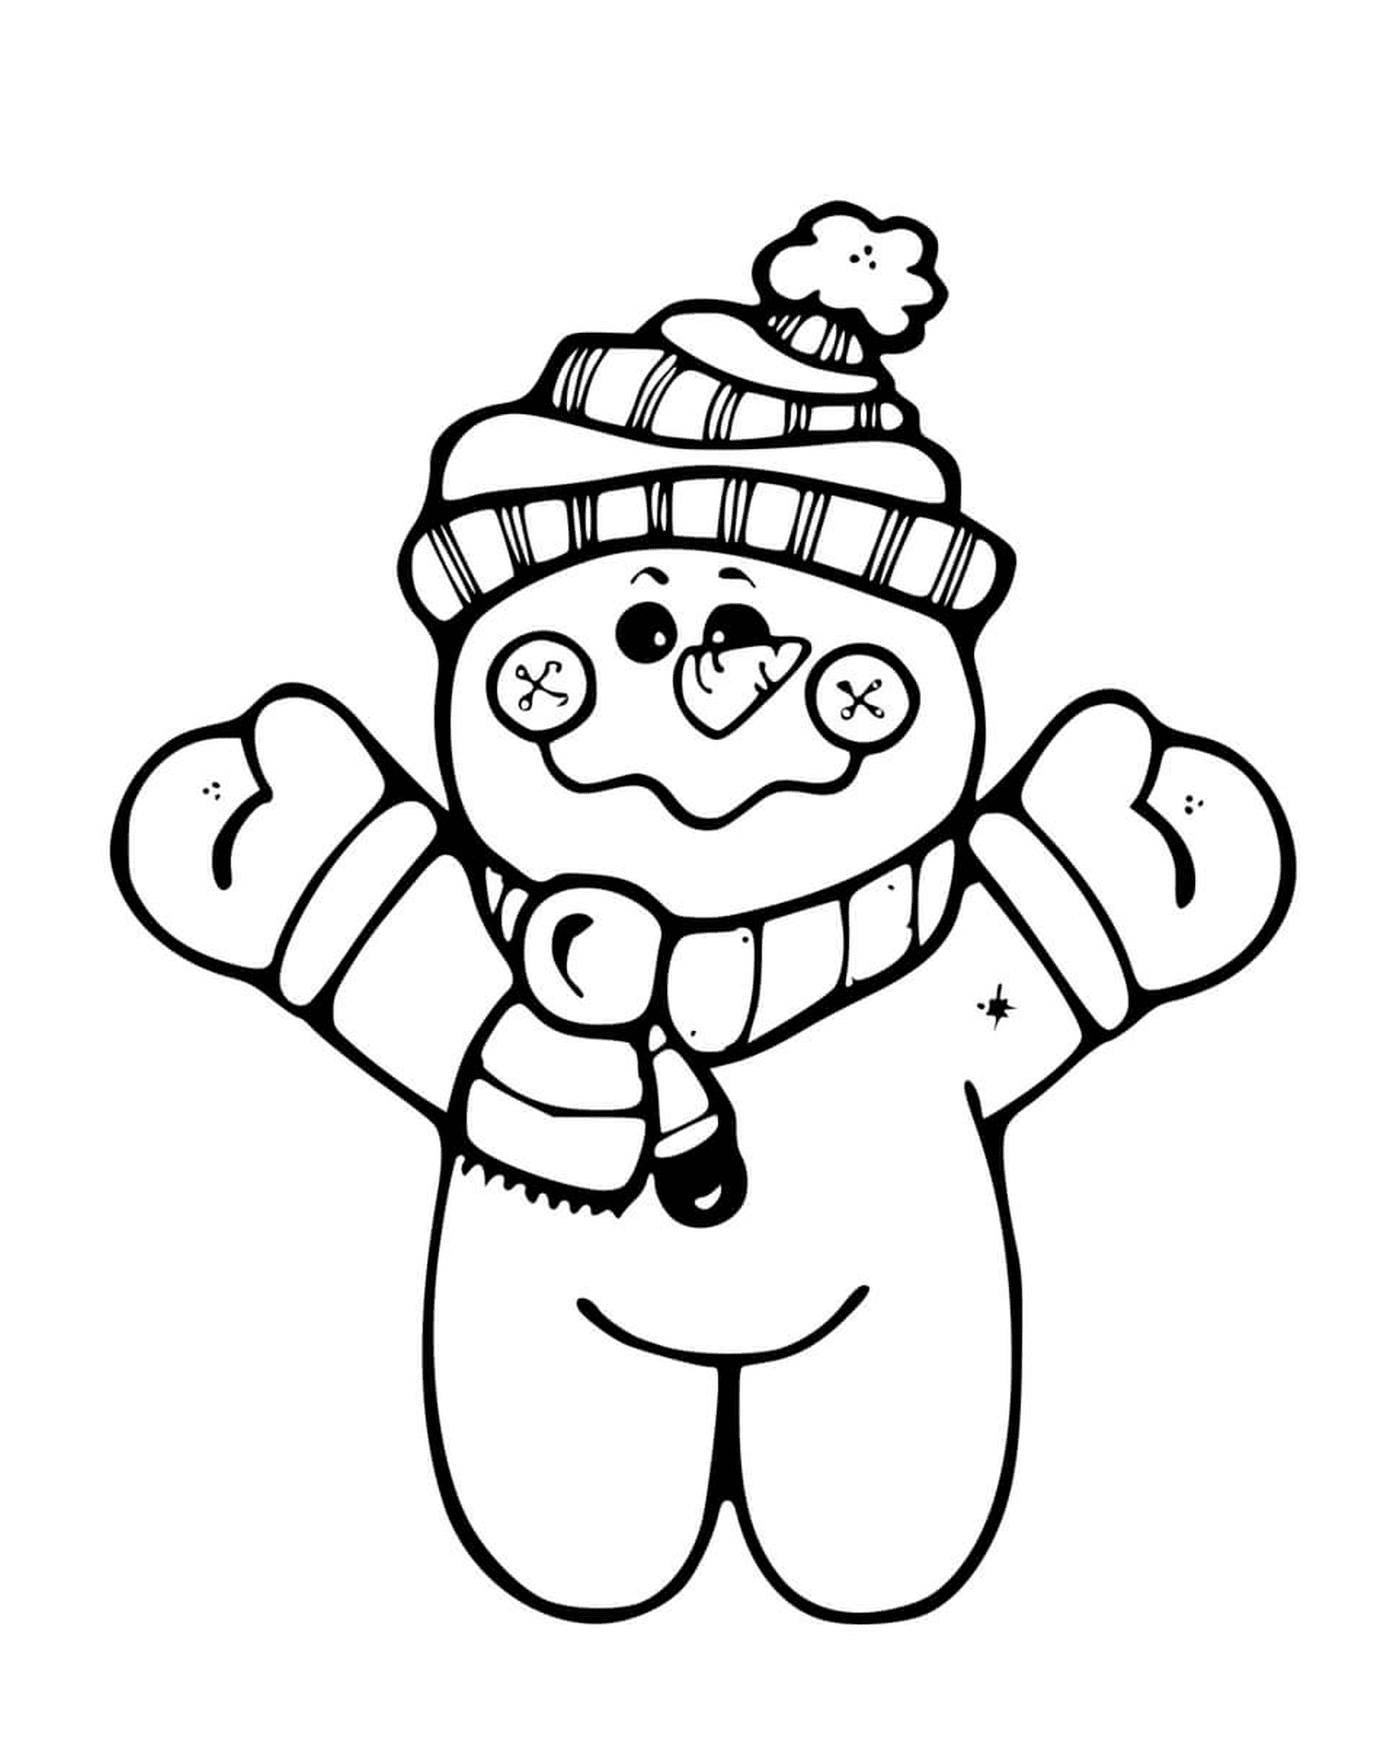  Pequeño muñeco de nieve de pie, con un tuque y una bufanda 